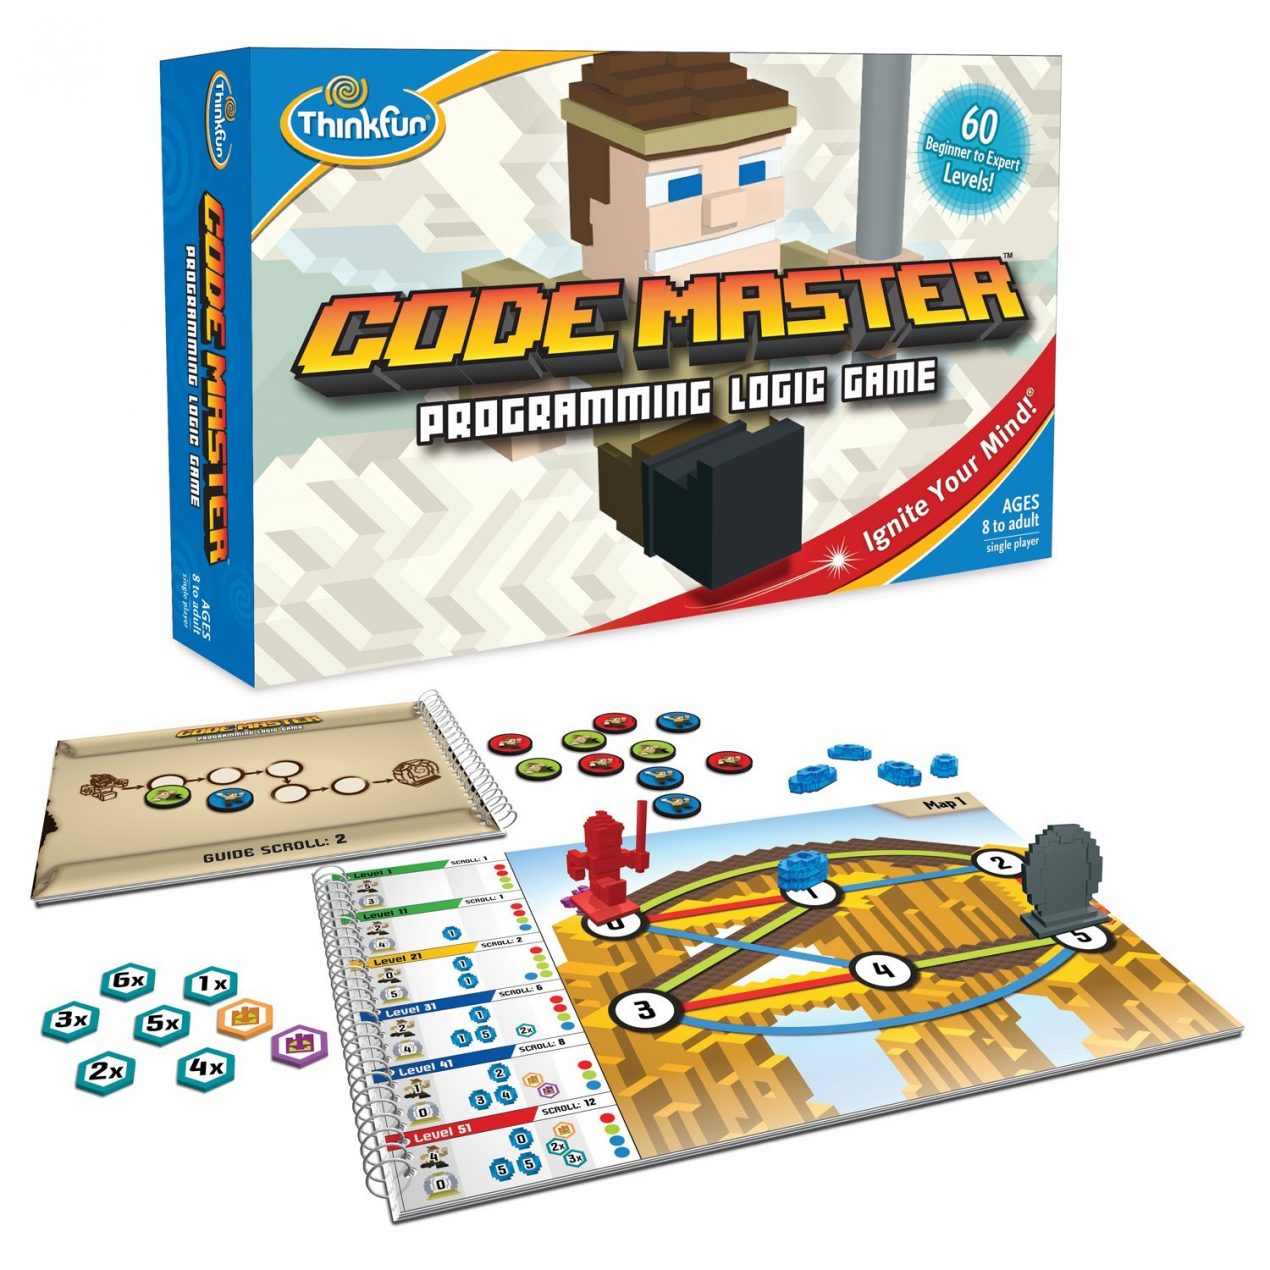 Think Fun Code Master Programming Logic Gam